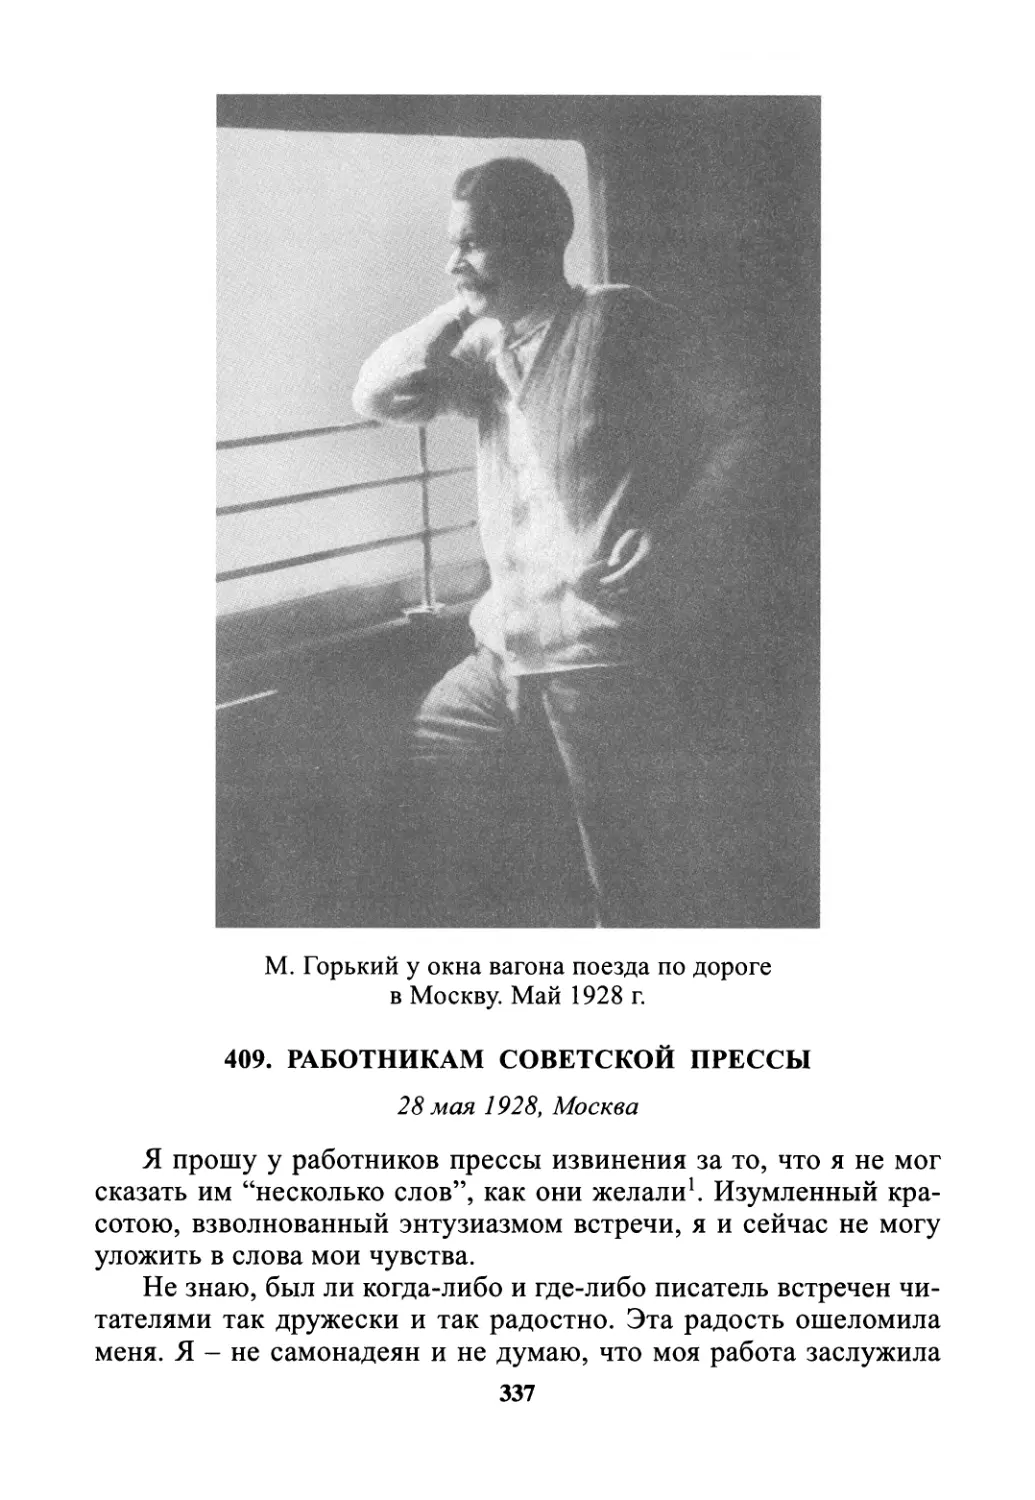 409. Работникам советской прессы - 28 мая